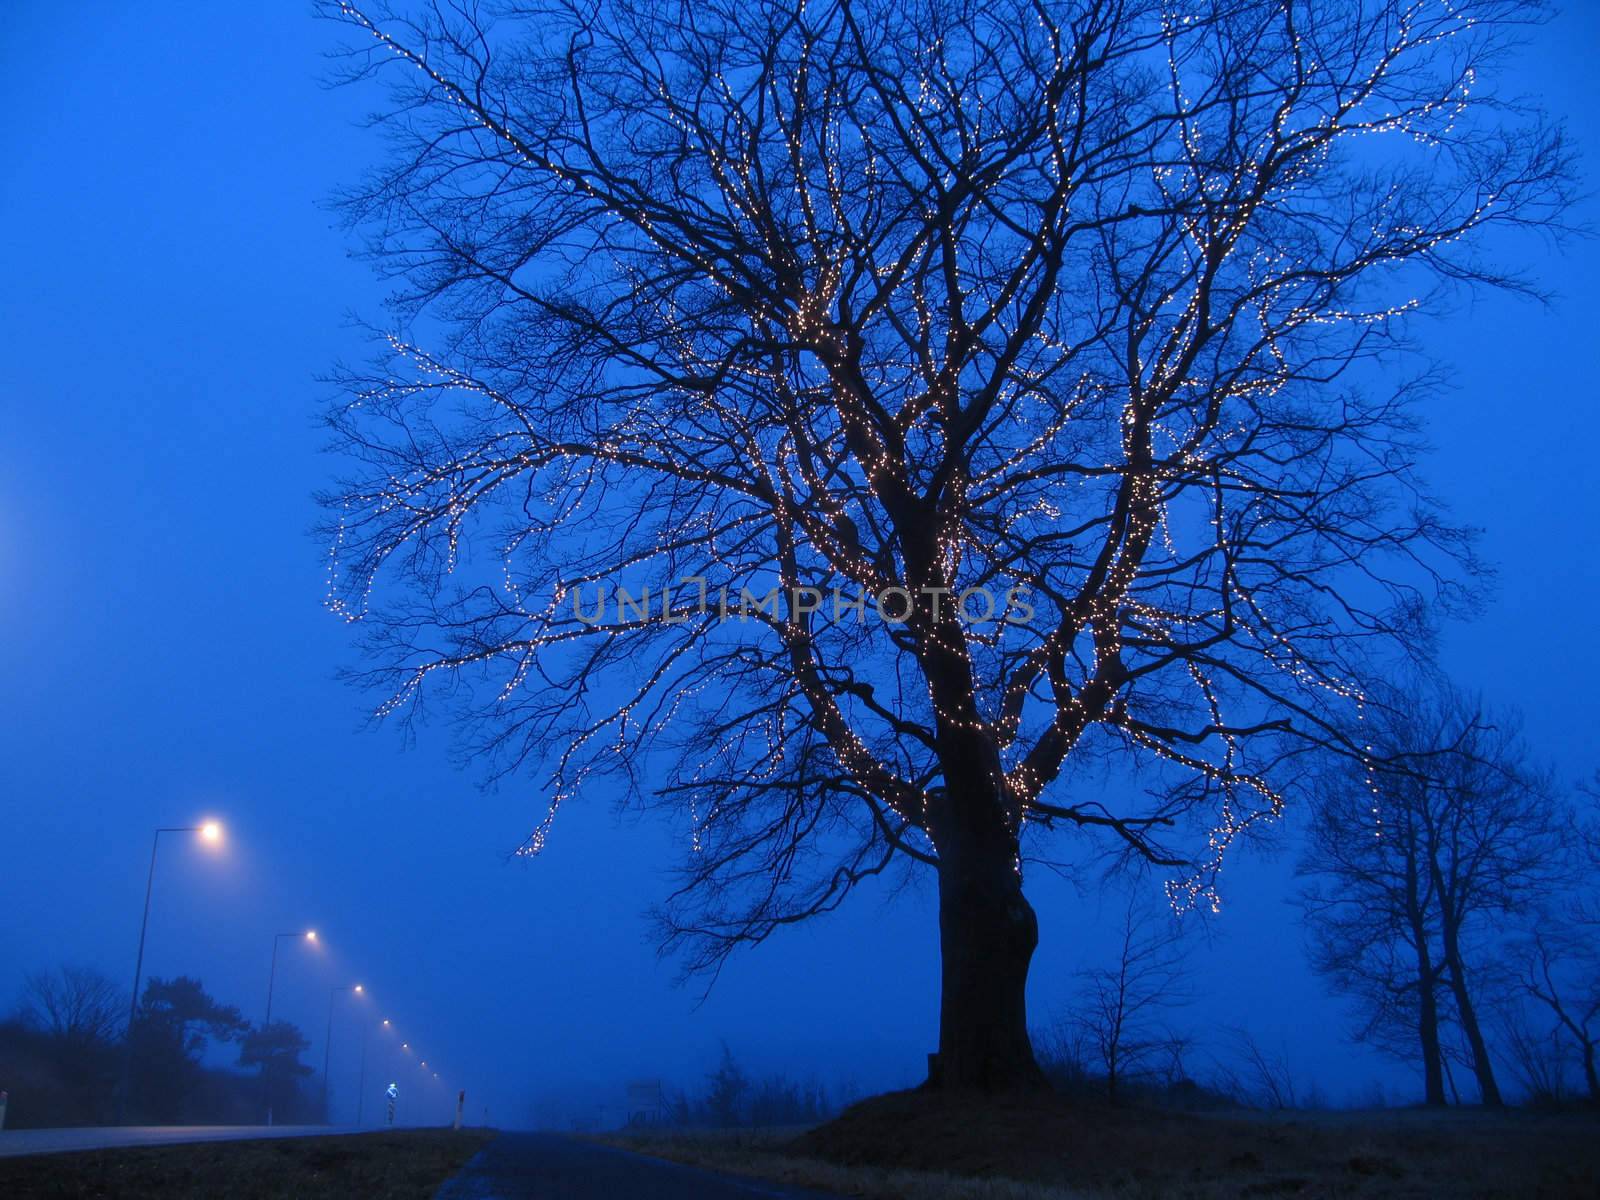 Illuminated tree by ABCDK